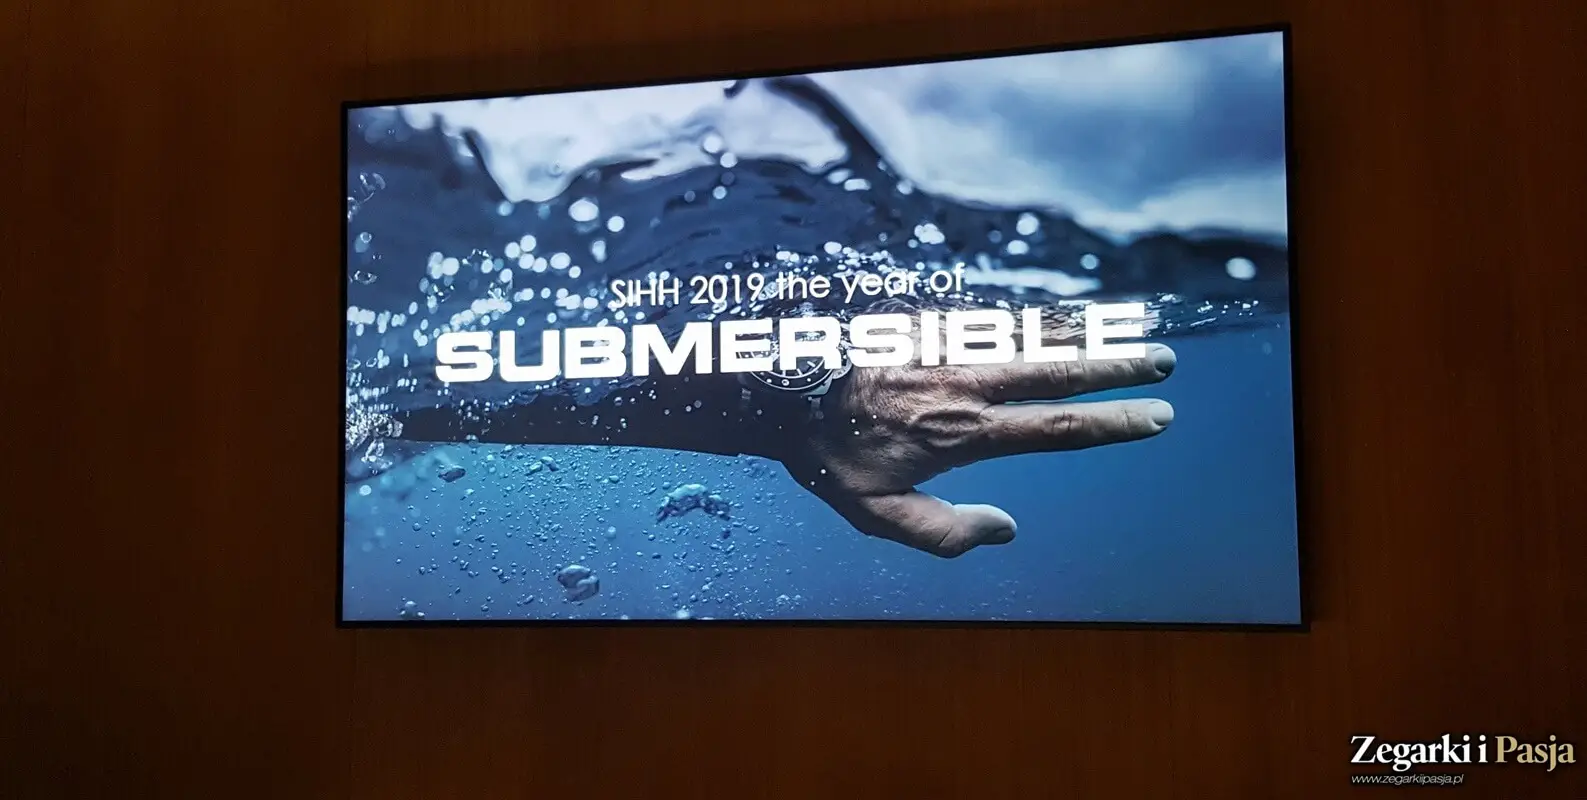 Prezentujemy: PANERAI Submersible 42 (zdjęcia live)